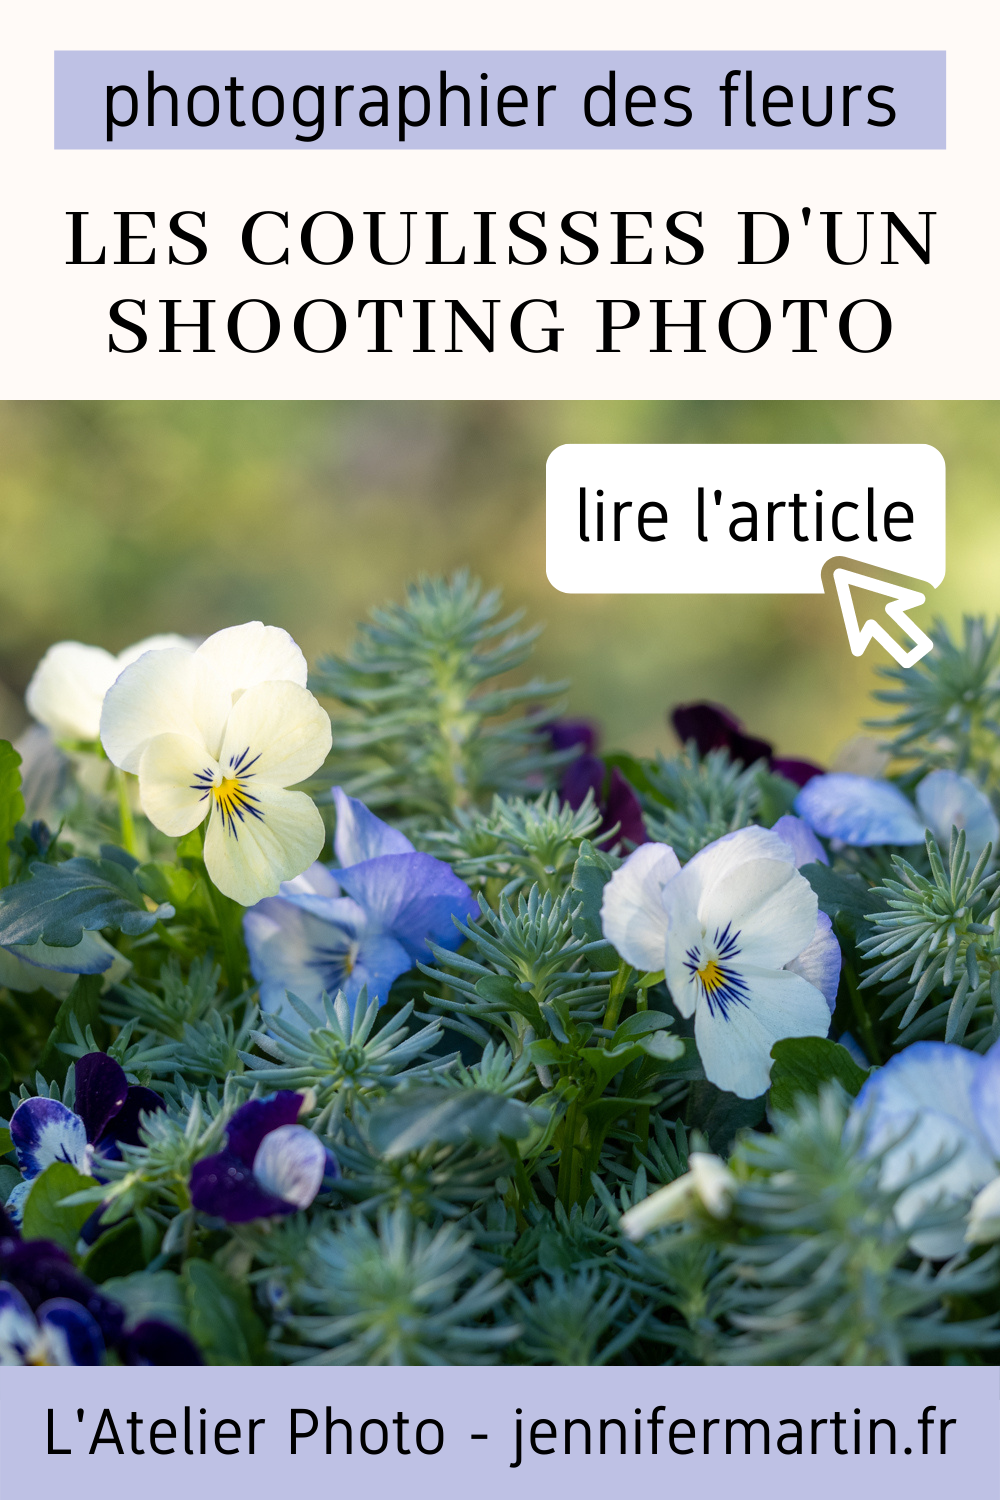 Les coulisses d'un shooting | Photographier des fleurs